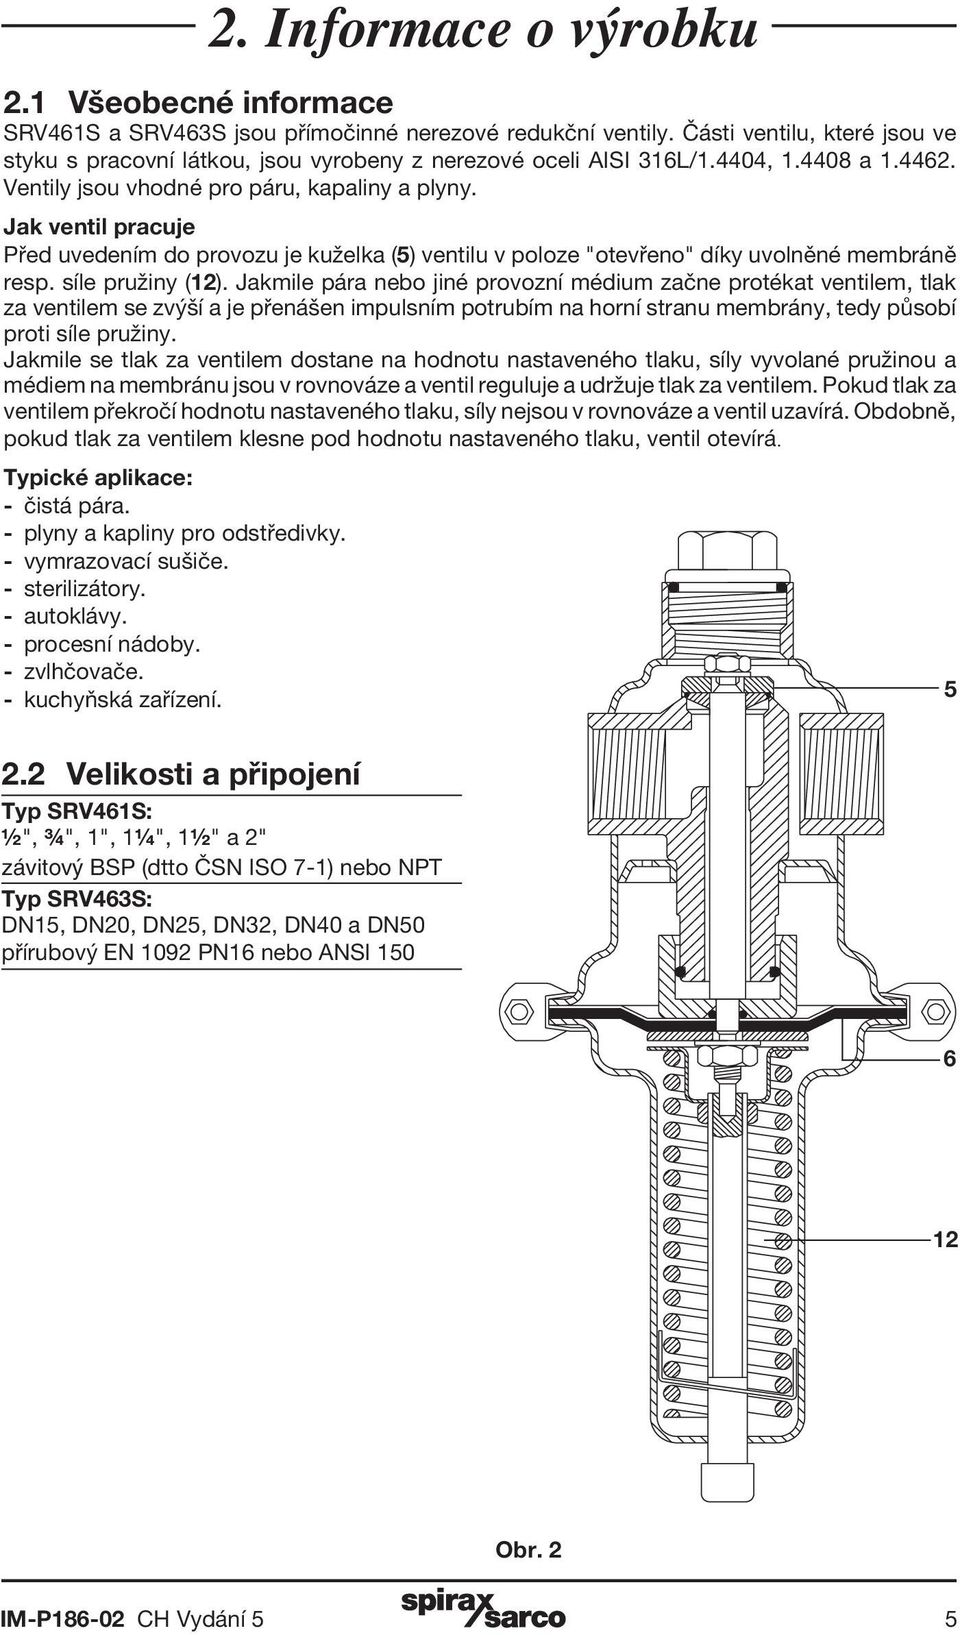 Jak ventil pracuje Před uvedením do provozu je kuželka (5) ventilu v poloze "otevřeno" díky uvolněné membráně resp. síle pružiny (12).